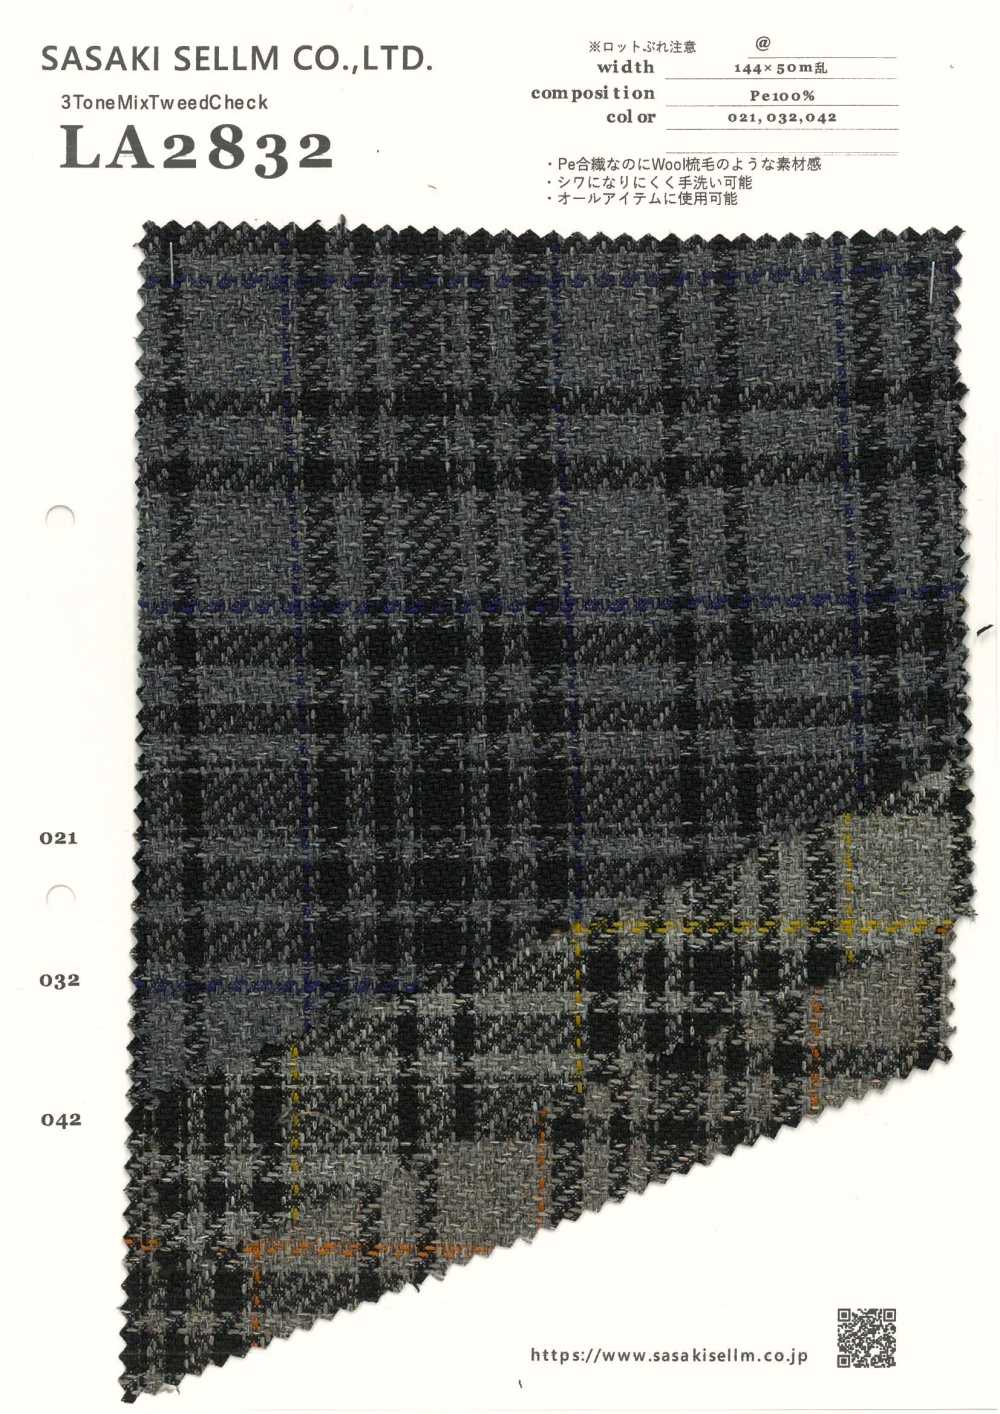 LA2832 Chèque 3ToneMix Tweed[Fabrication De Textile] SASAKISELLM